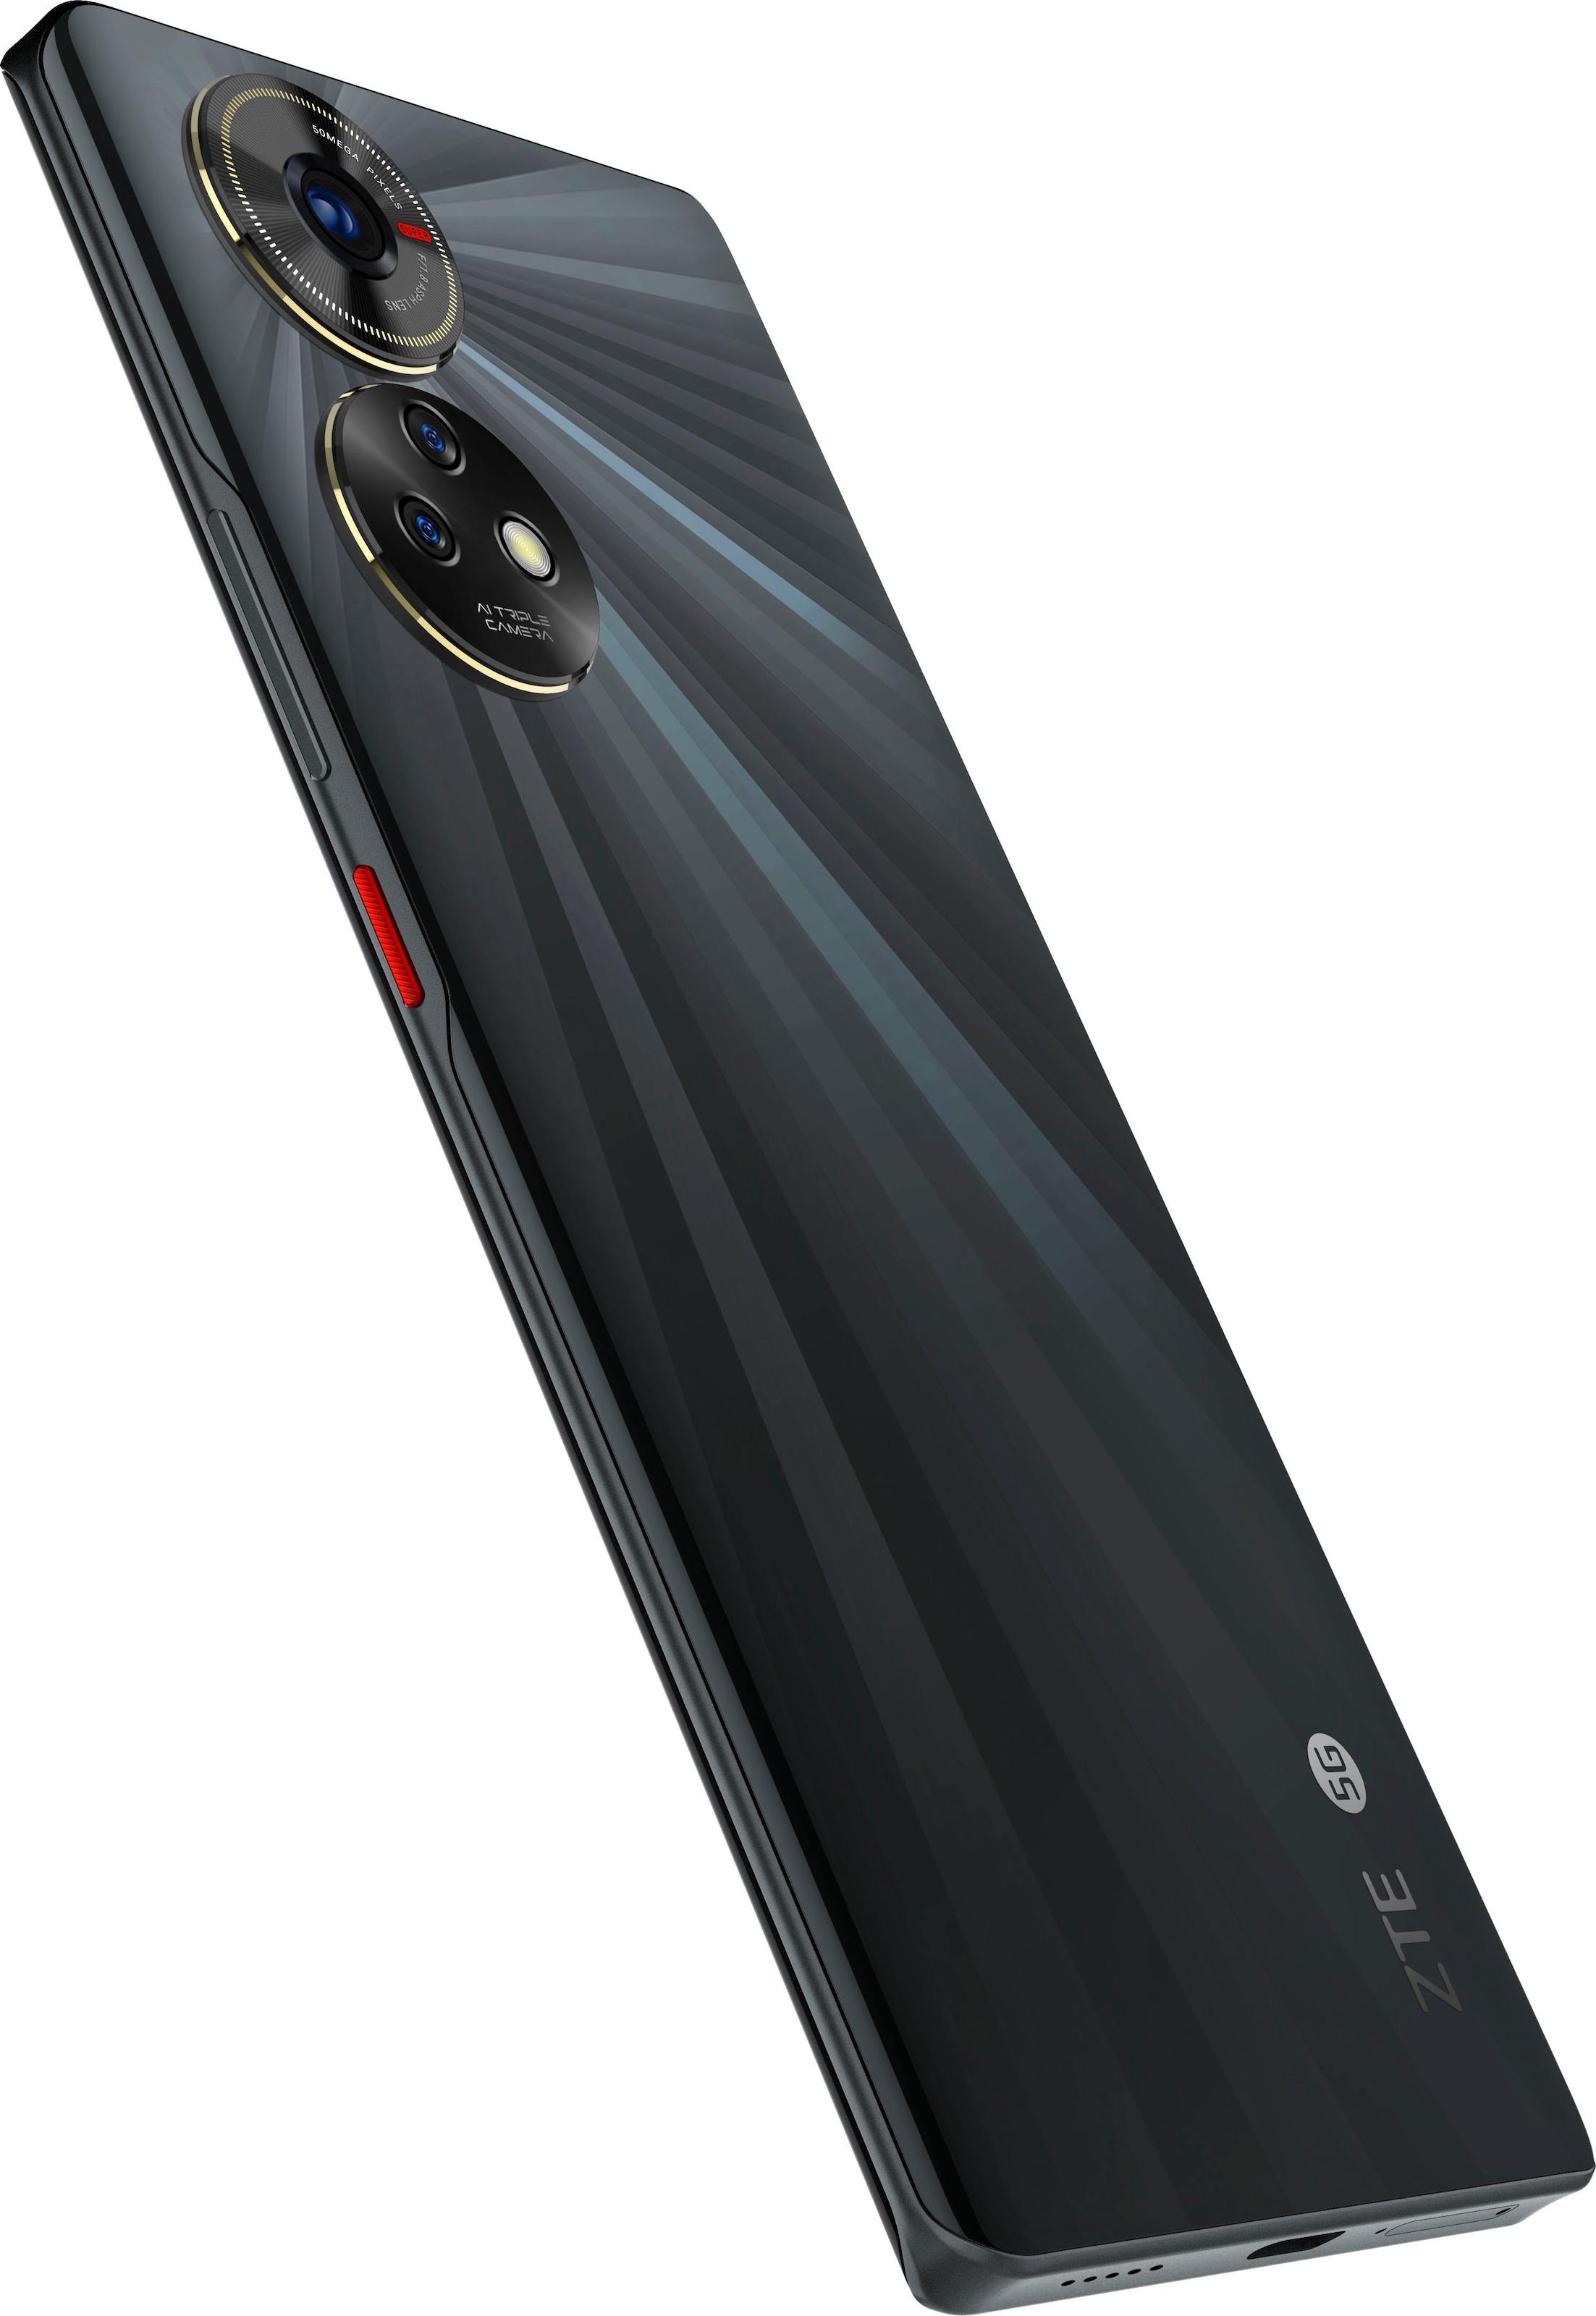 ZTE Smartphone »Blade V50 5G«, schwarz, 16,94 cm/6,67 Zoll, 256 GB  Speicherplatz, 50 MP Kamera online kaufen